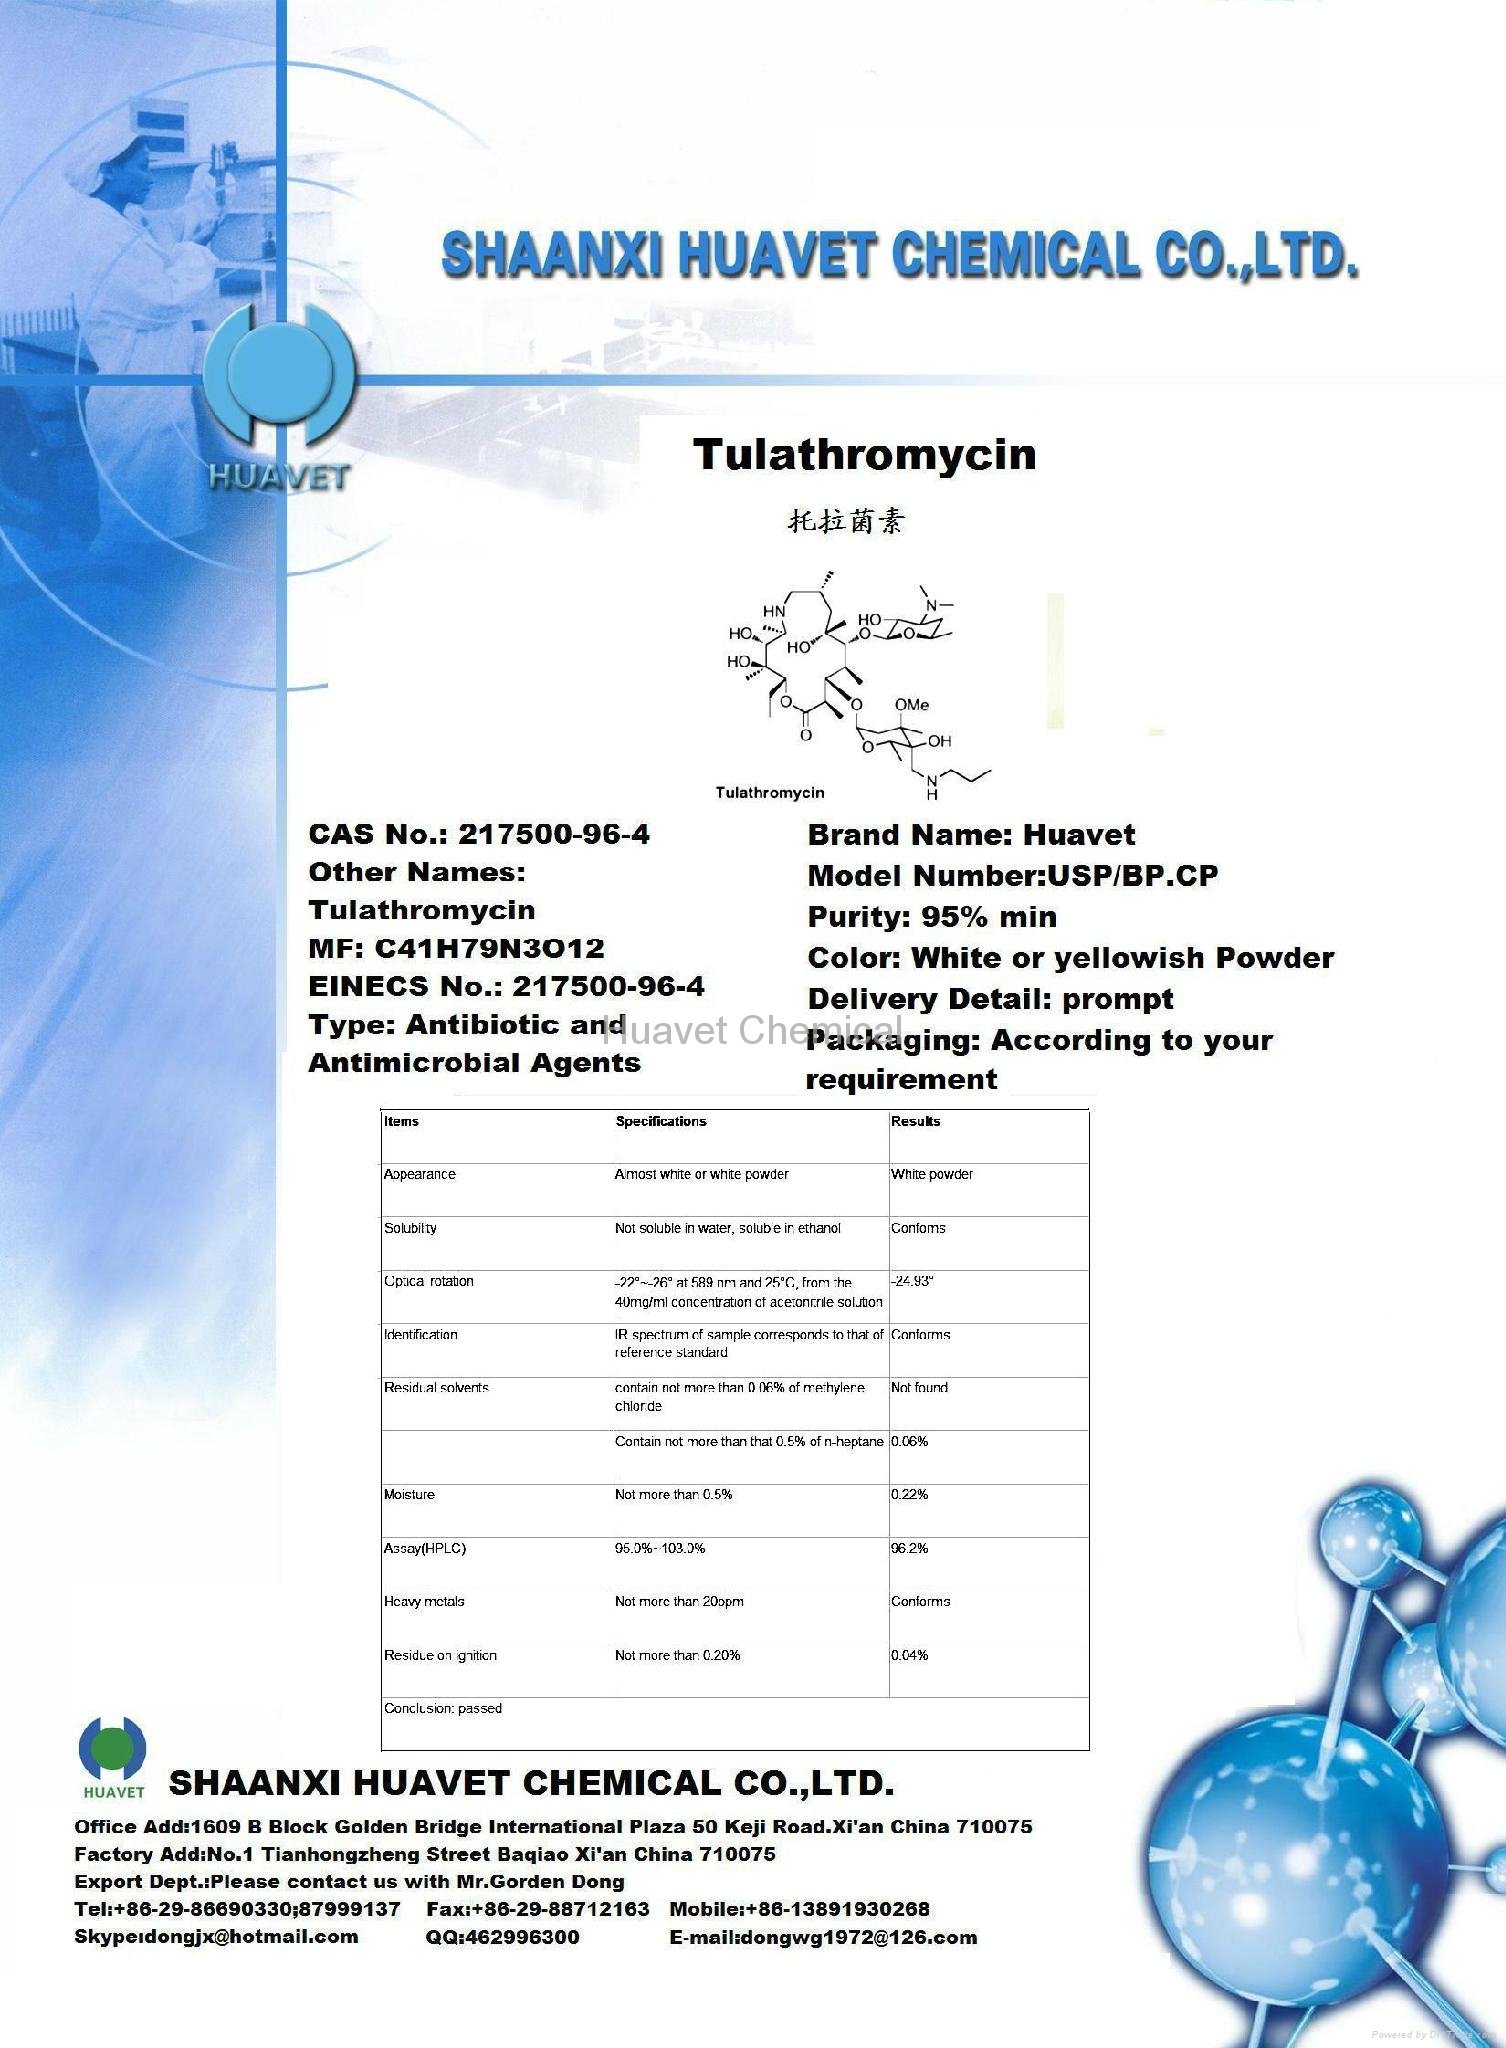 Tulathromycin (CAS No.: 217500-96-4)